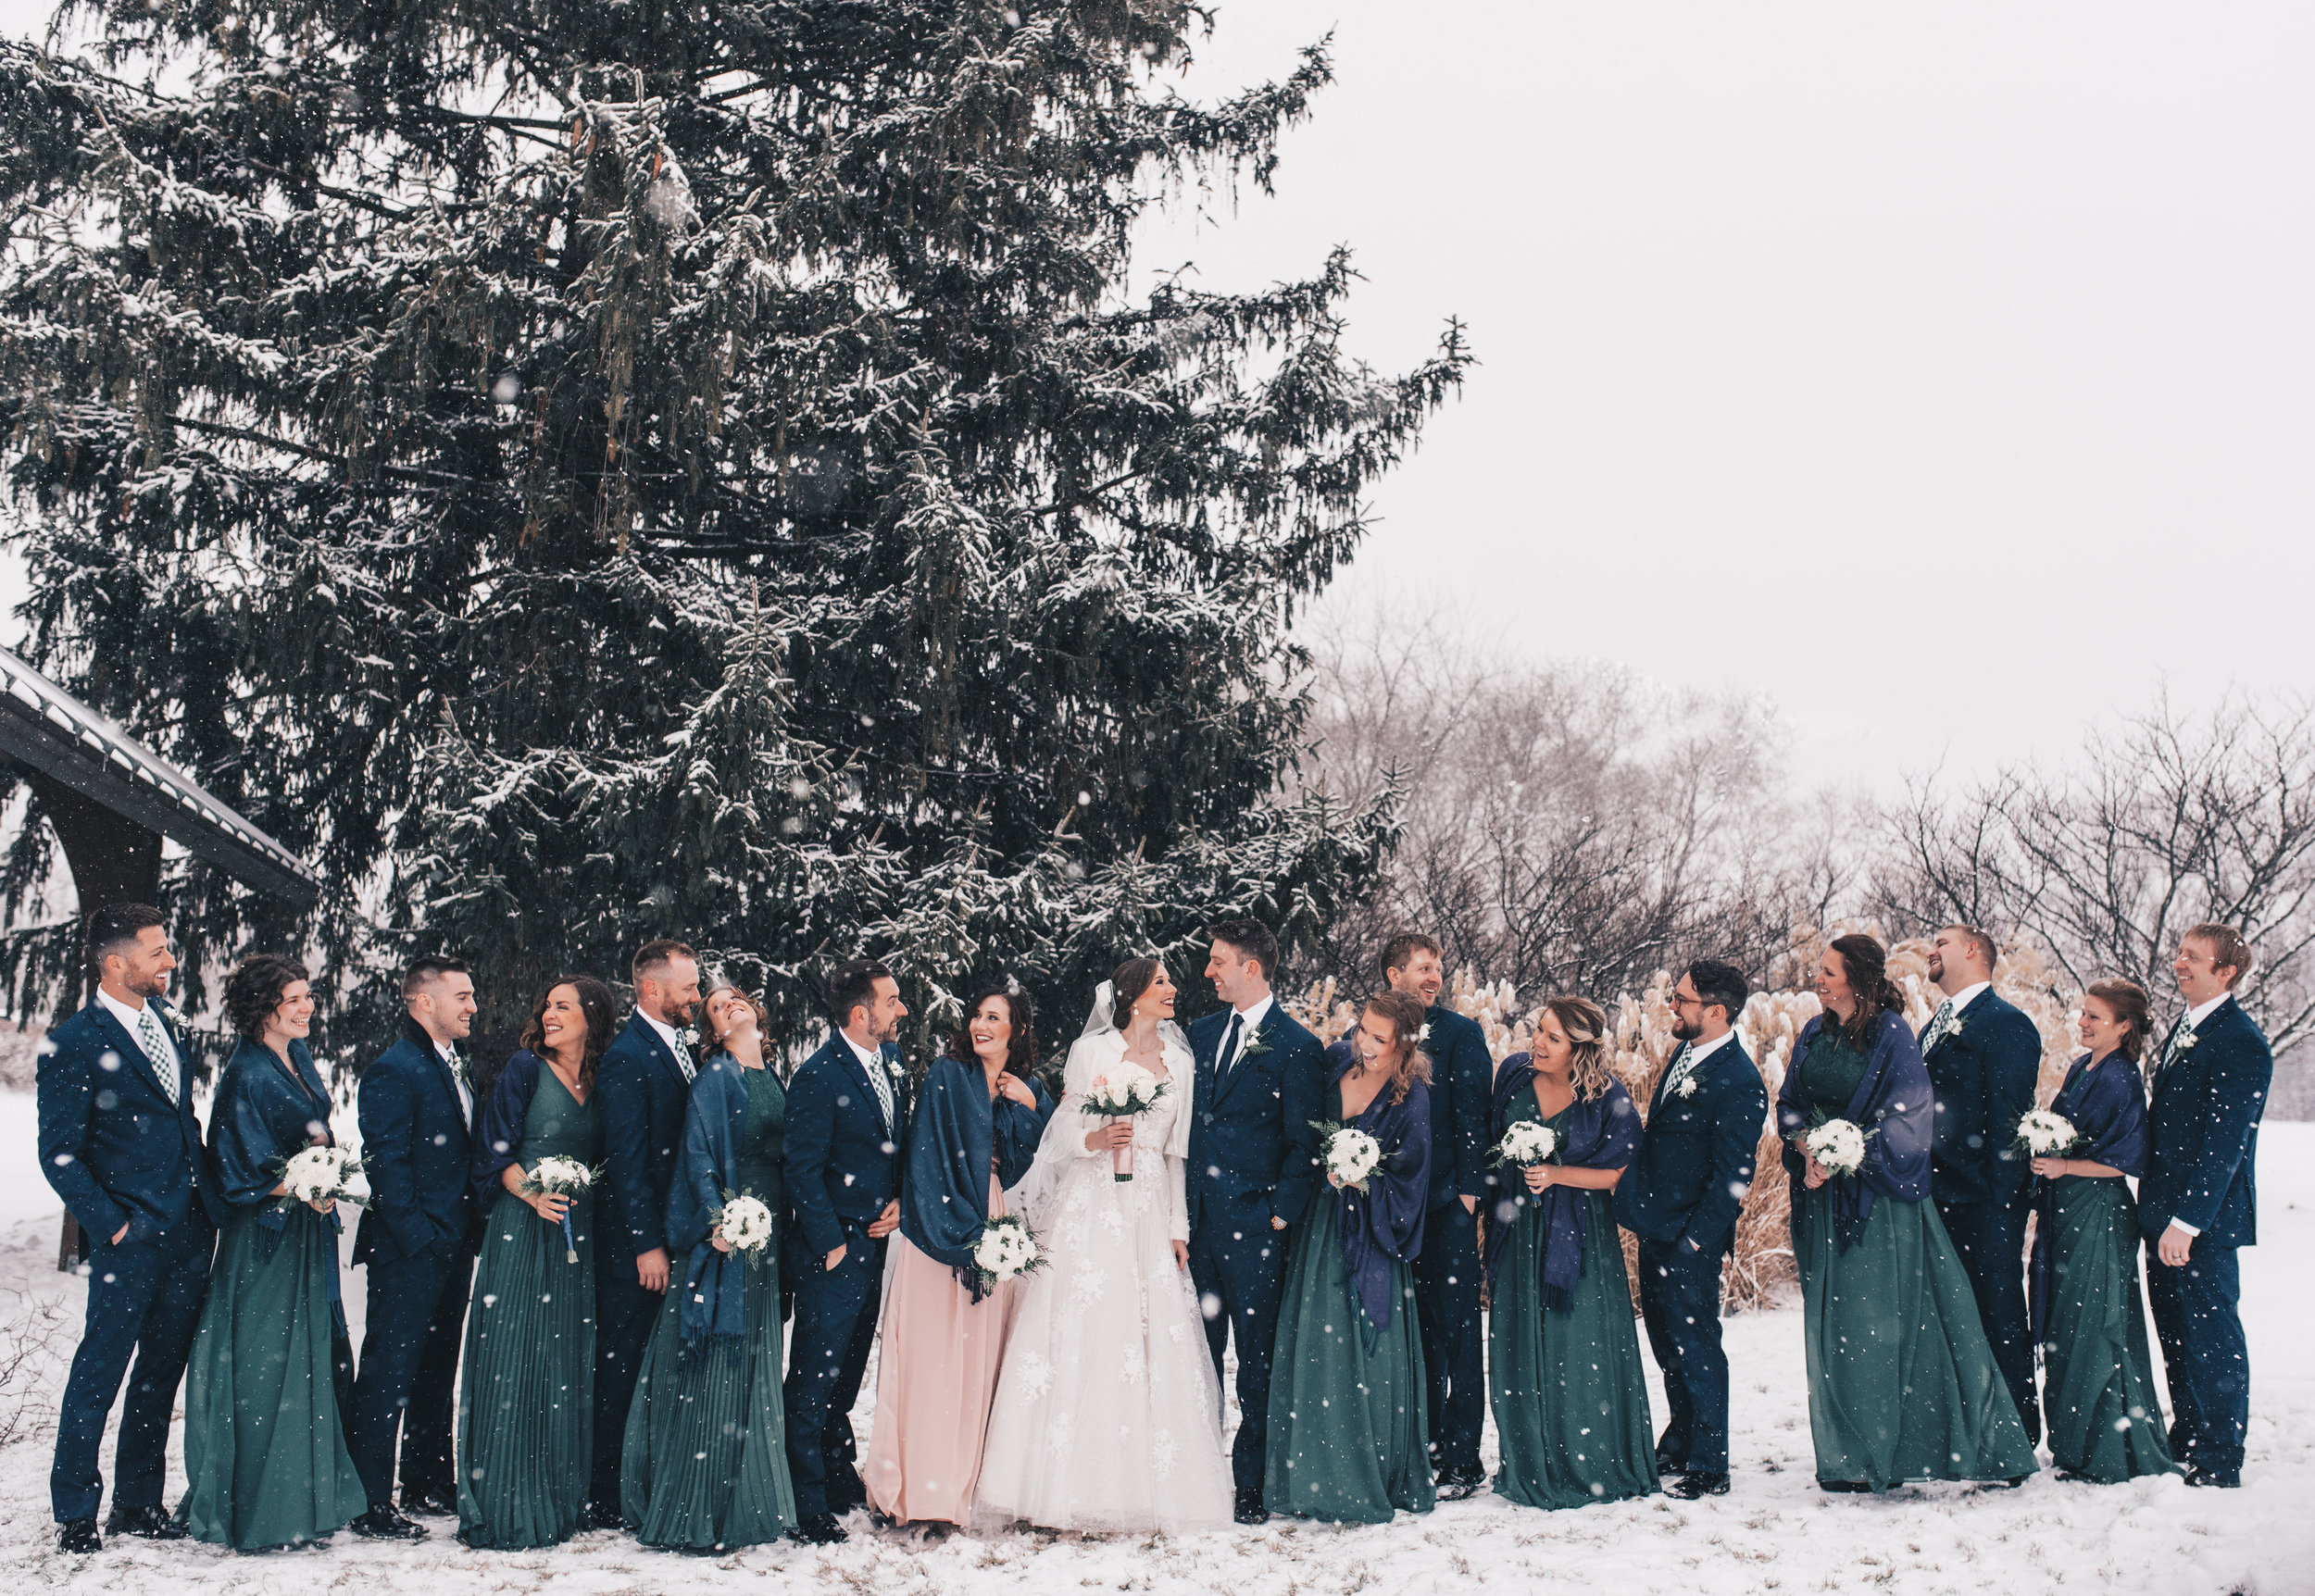 Winter Wedding, Chicago Winter Wedding, Chicago Wedding Photographer, Illinois Wedding, Illinois Wedding Photographer, Classy Modern Wedding, Bridesmaid Photos, Bridal Party Photos